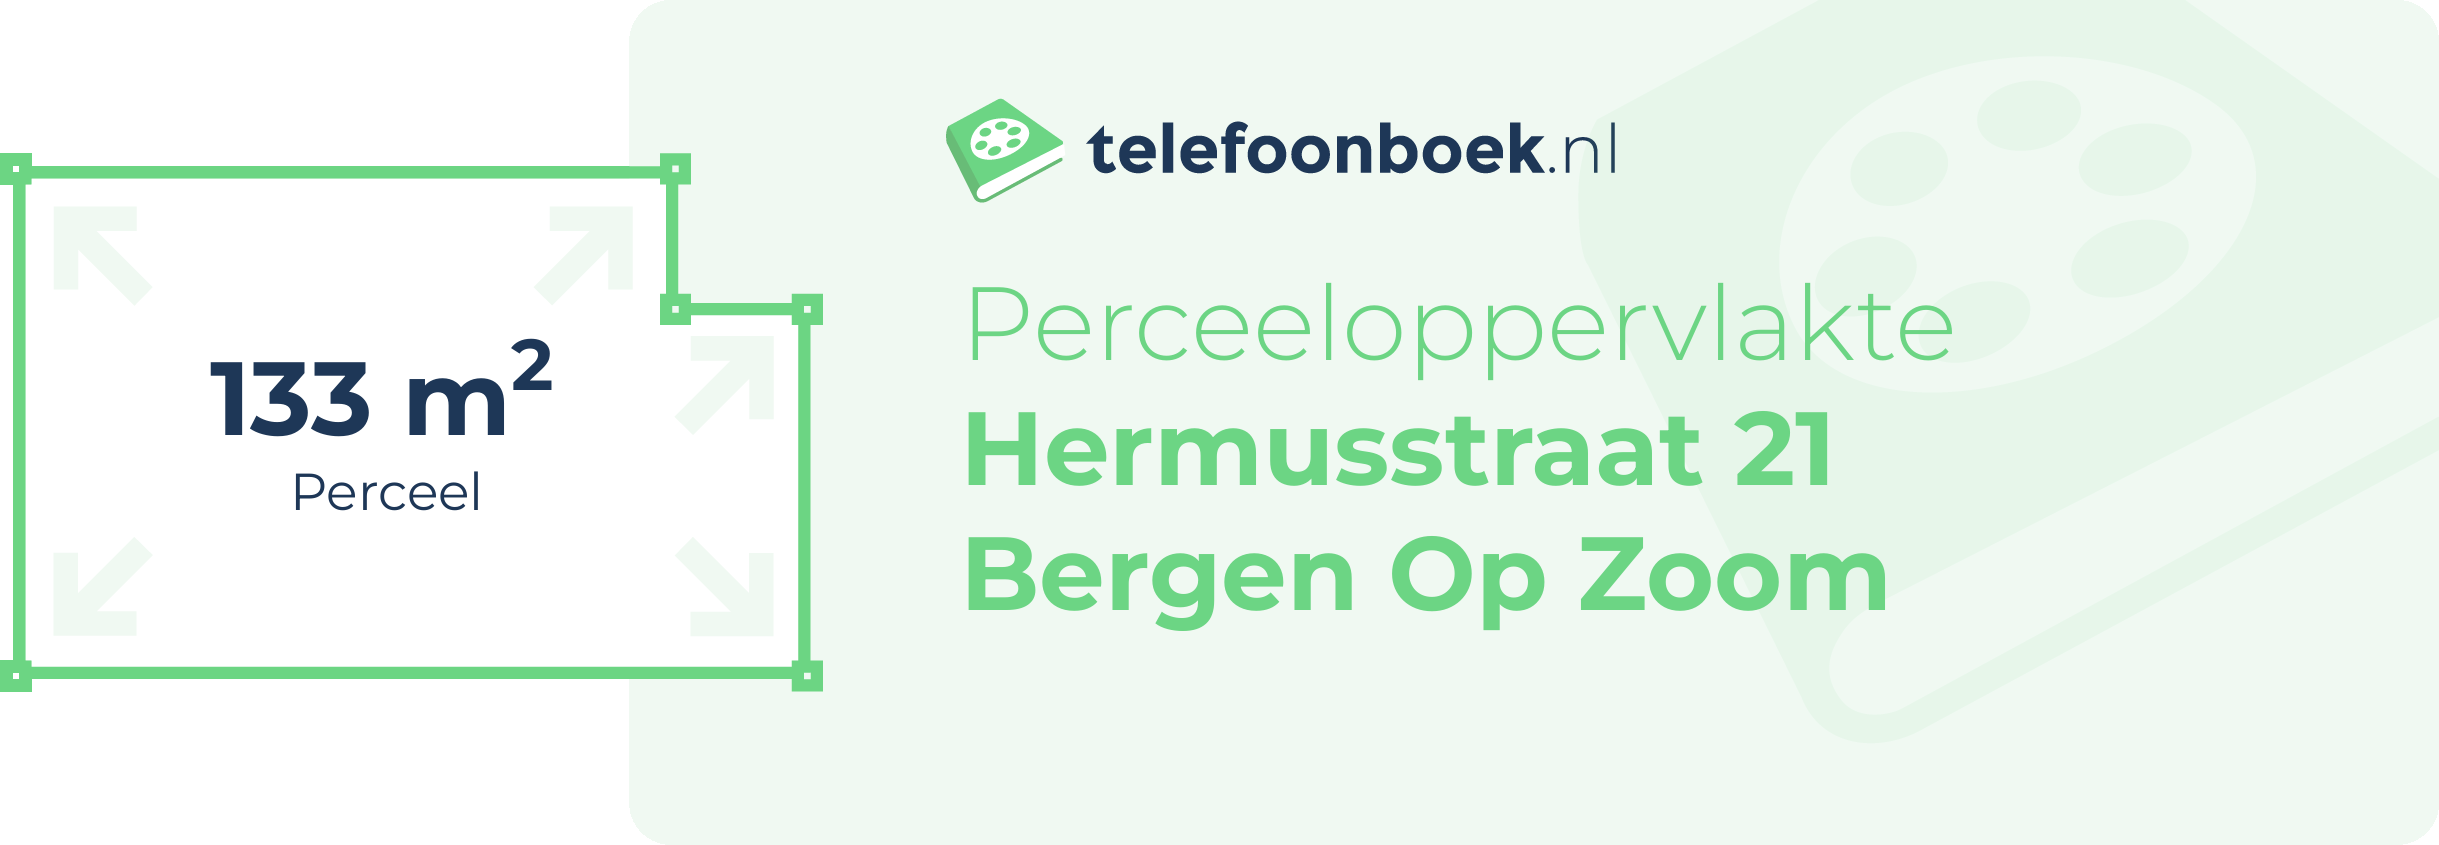 Perceeloppervlakte Hermusstraat 21 Bergen Op Zoom